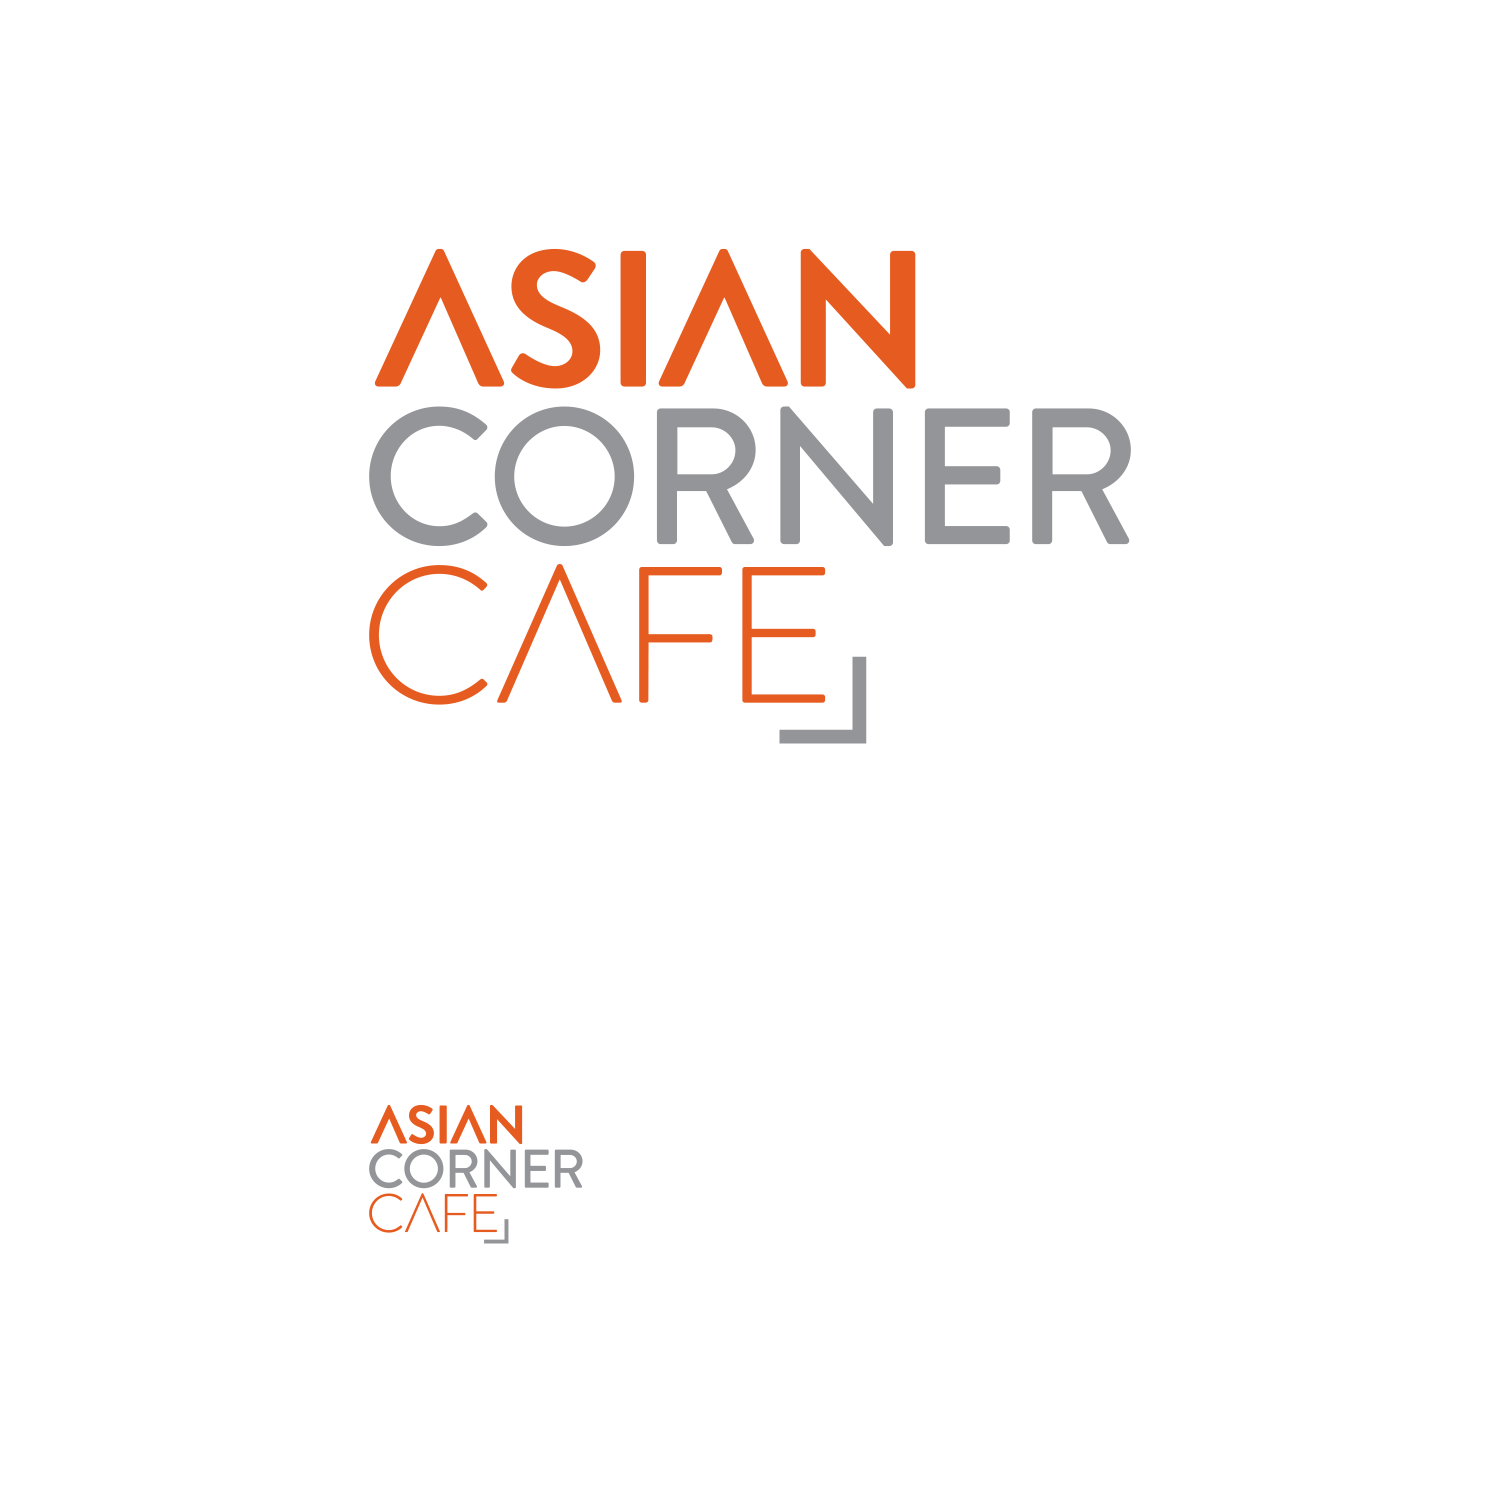 Asian Orange Logo - Modern, Personable, Asian Restaurant Logo Design for Asian Corner